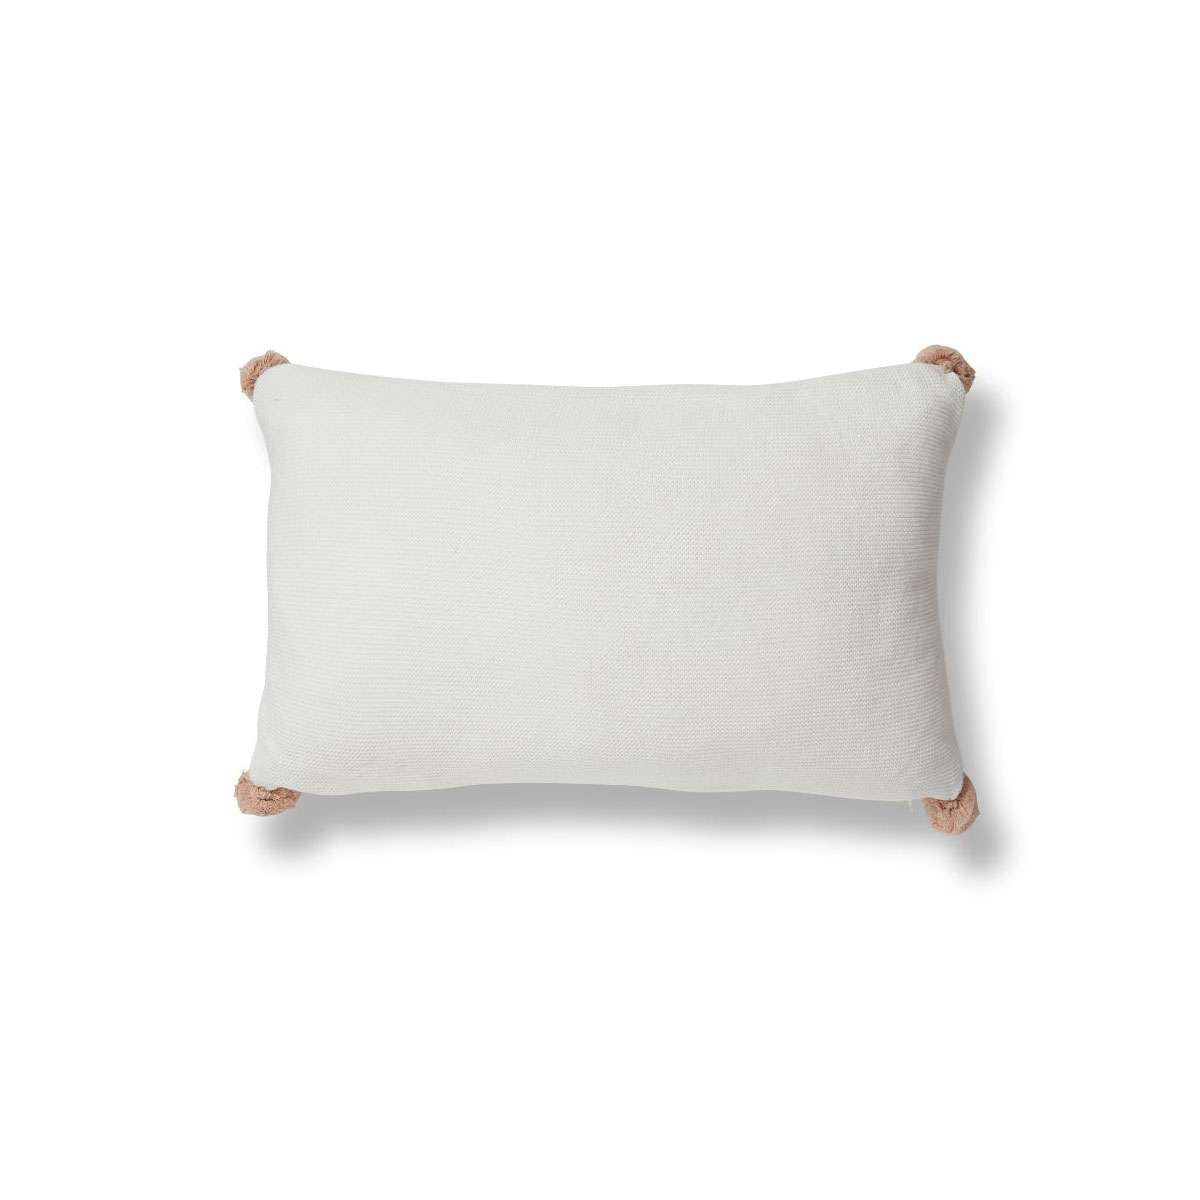 Priya Pompom Knit Cushion - Ivory/Pink